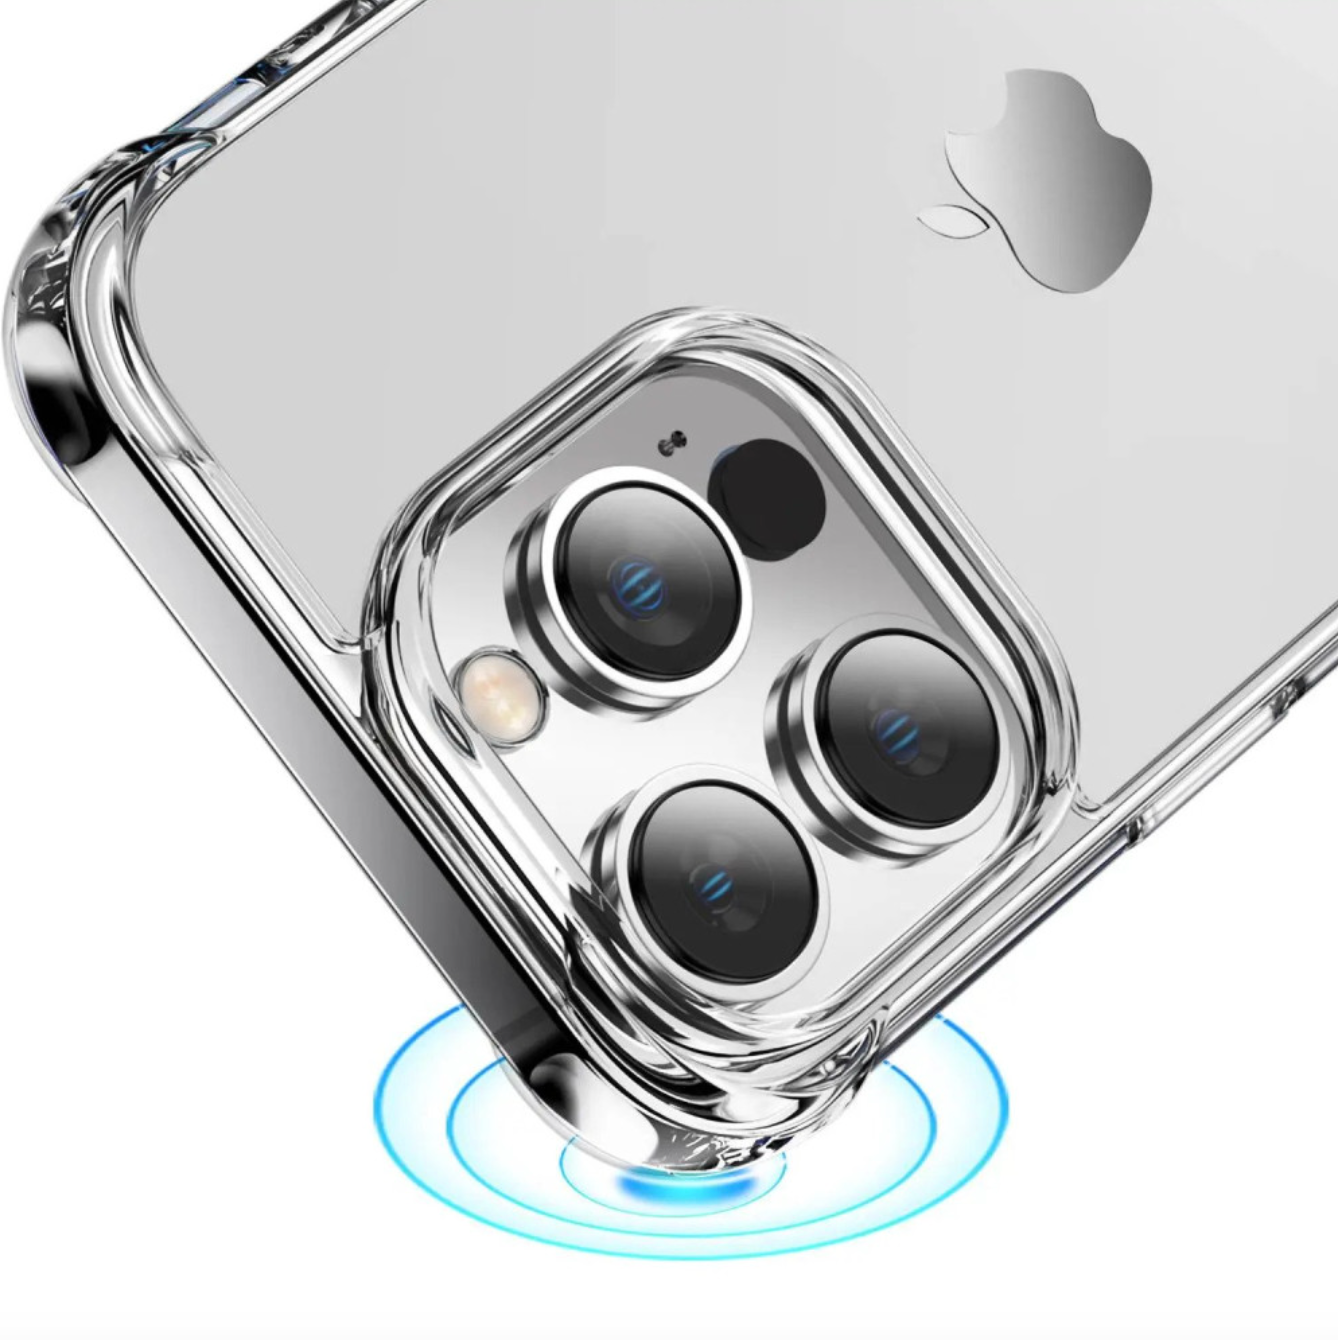 Carcasa Antigolpe Esquinas Reforzadas iPhone 15 Pro Max